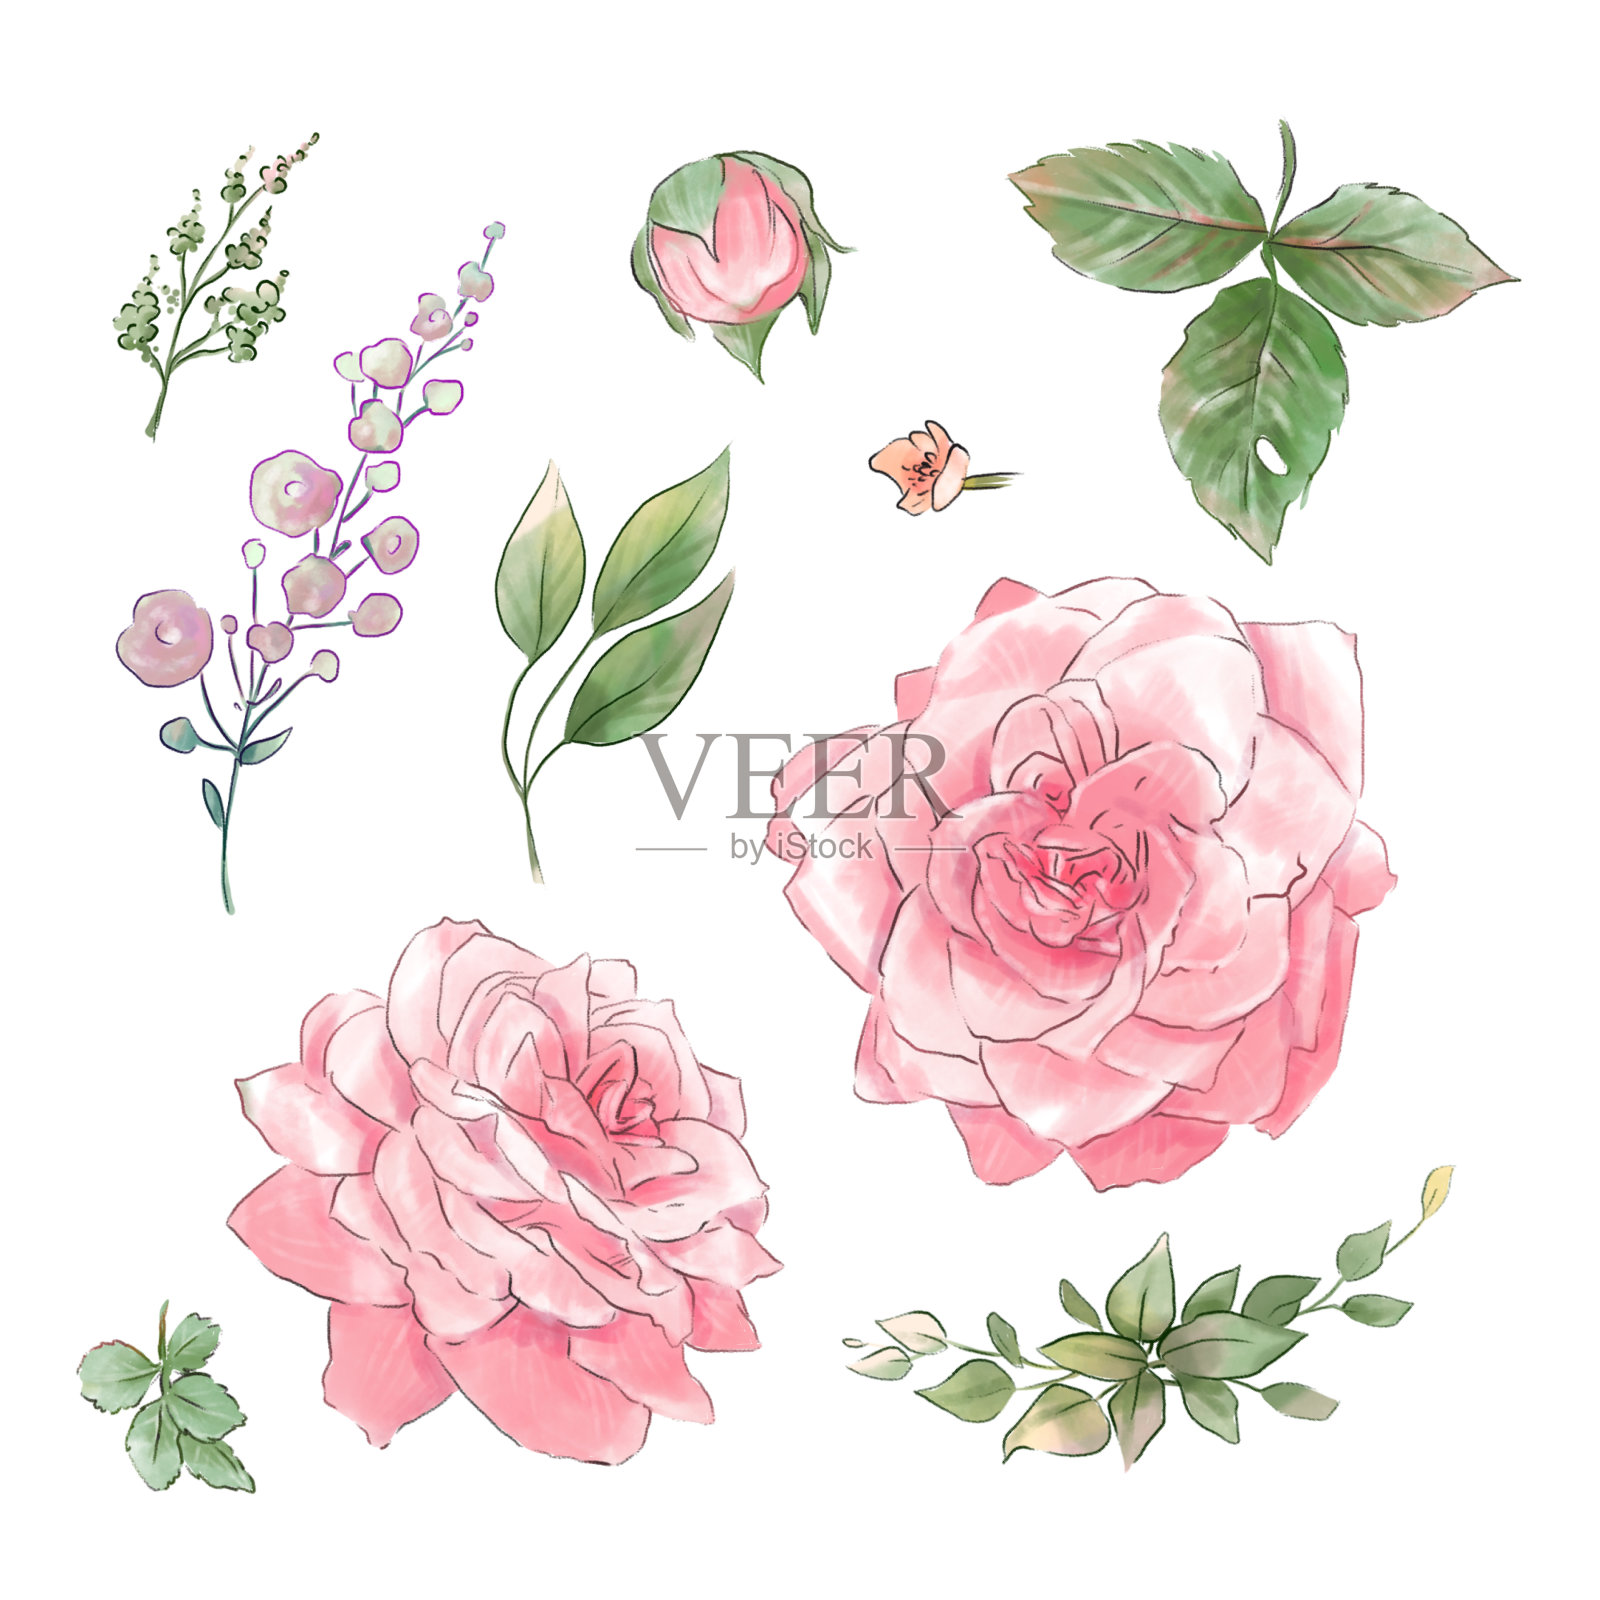 一大批娇嫩的玫瑰水彩画品质超群。插画图片素材